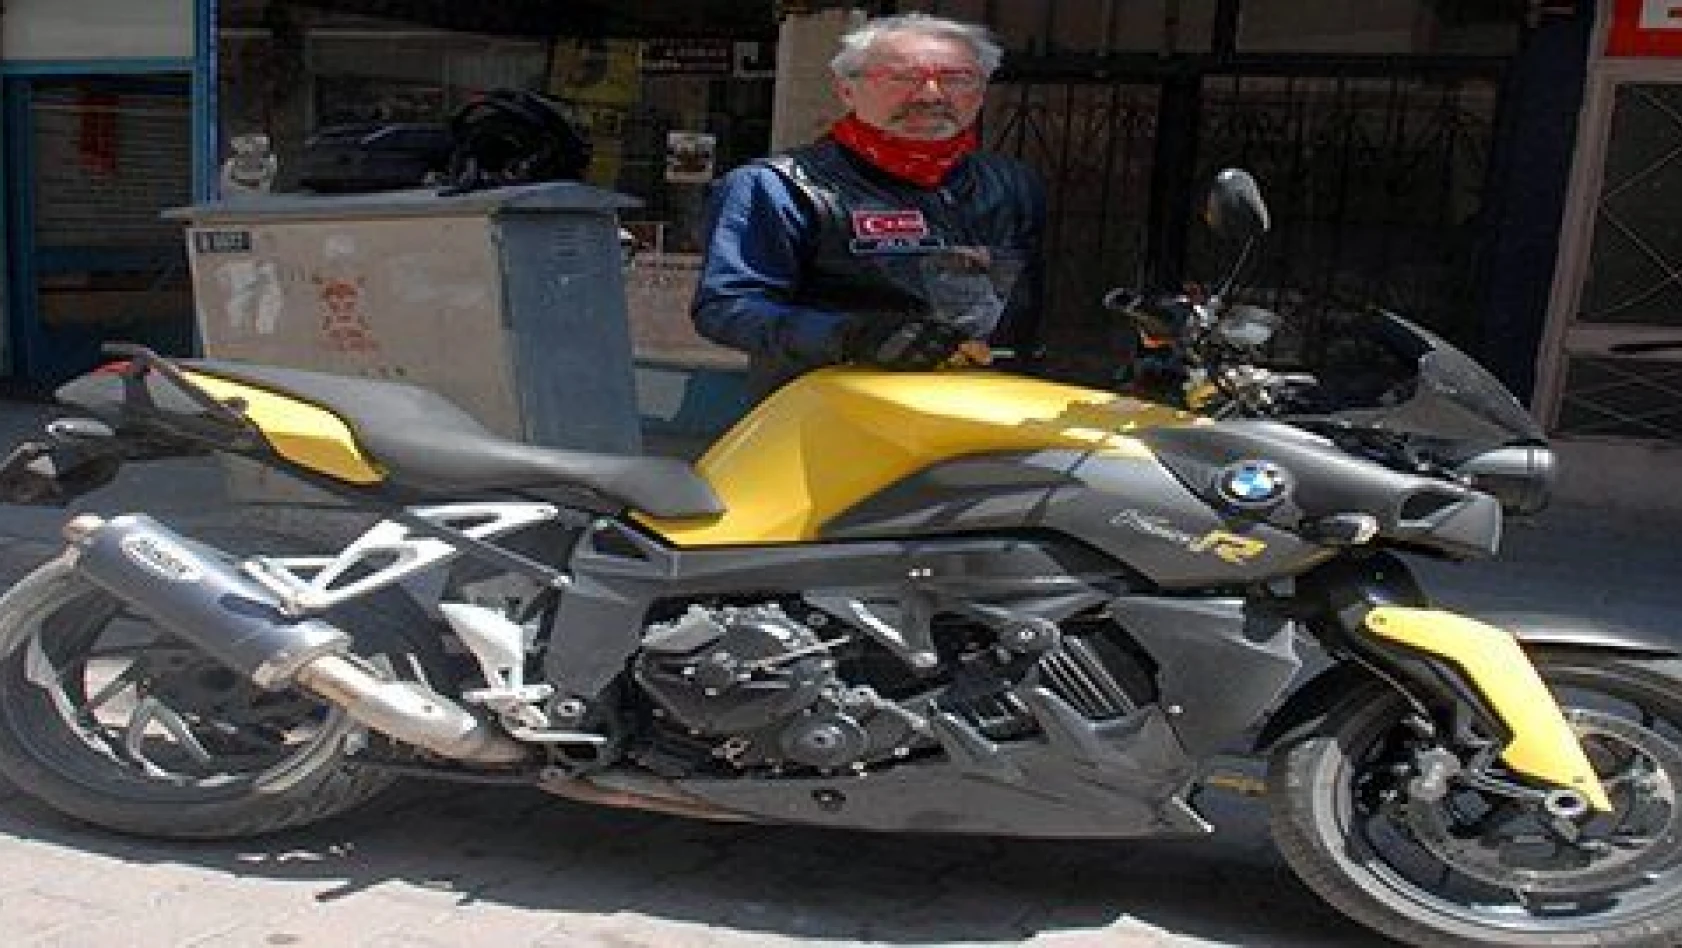 Kayserili gurbetçi motosiklet üzerinde 10 bin kilometre yol yaptı